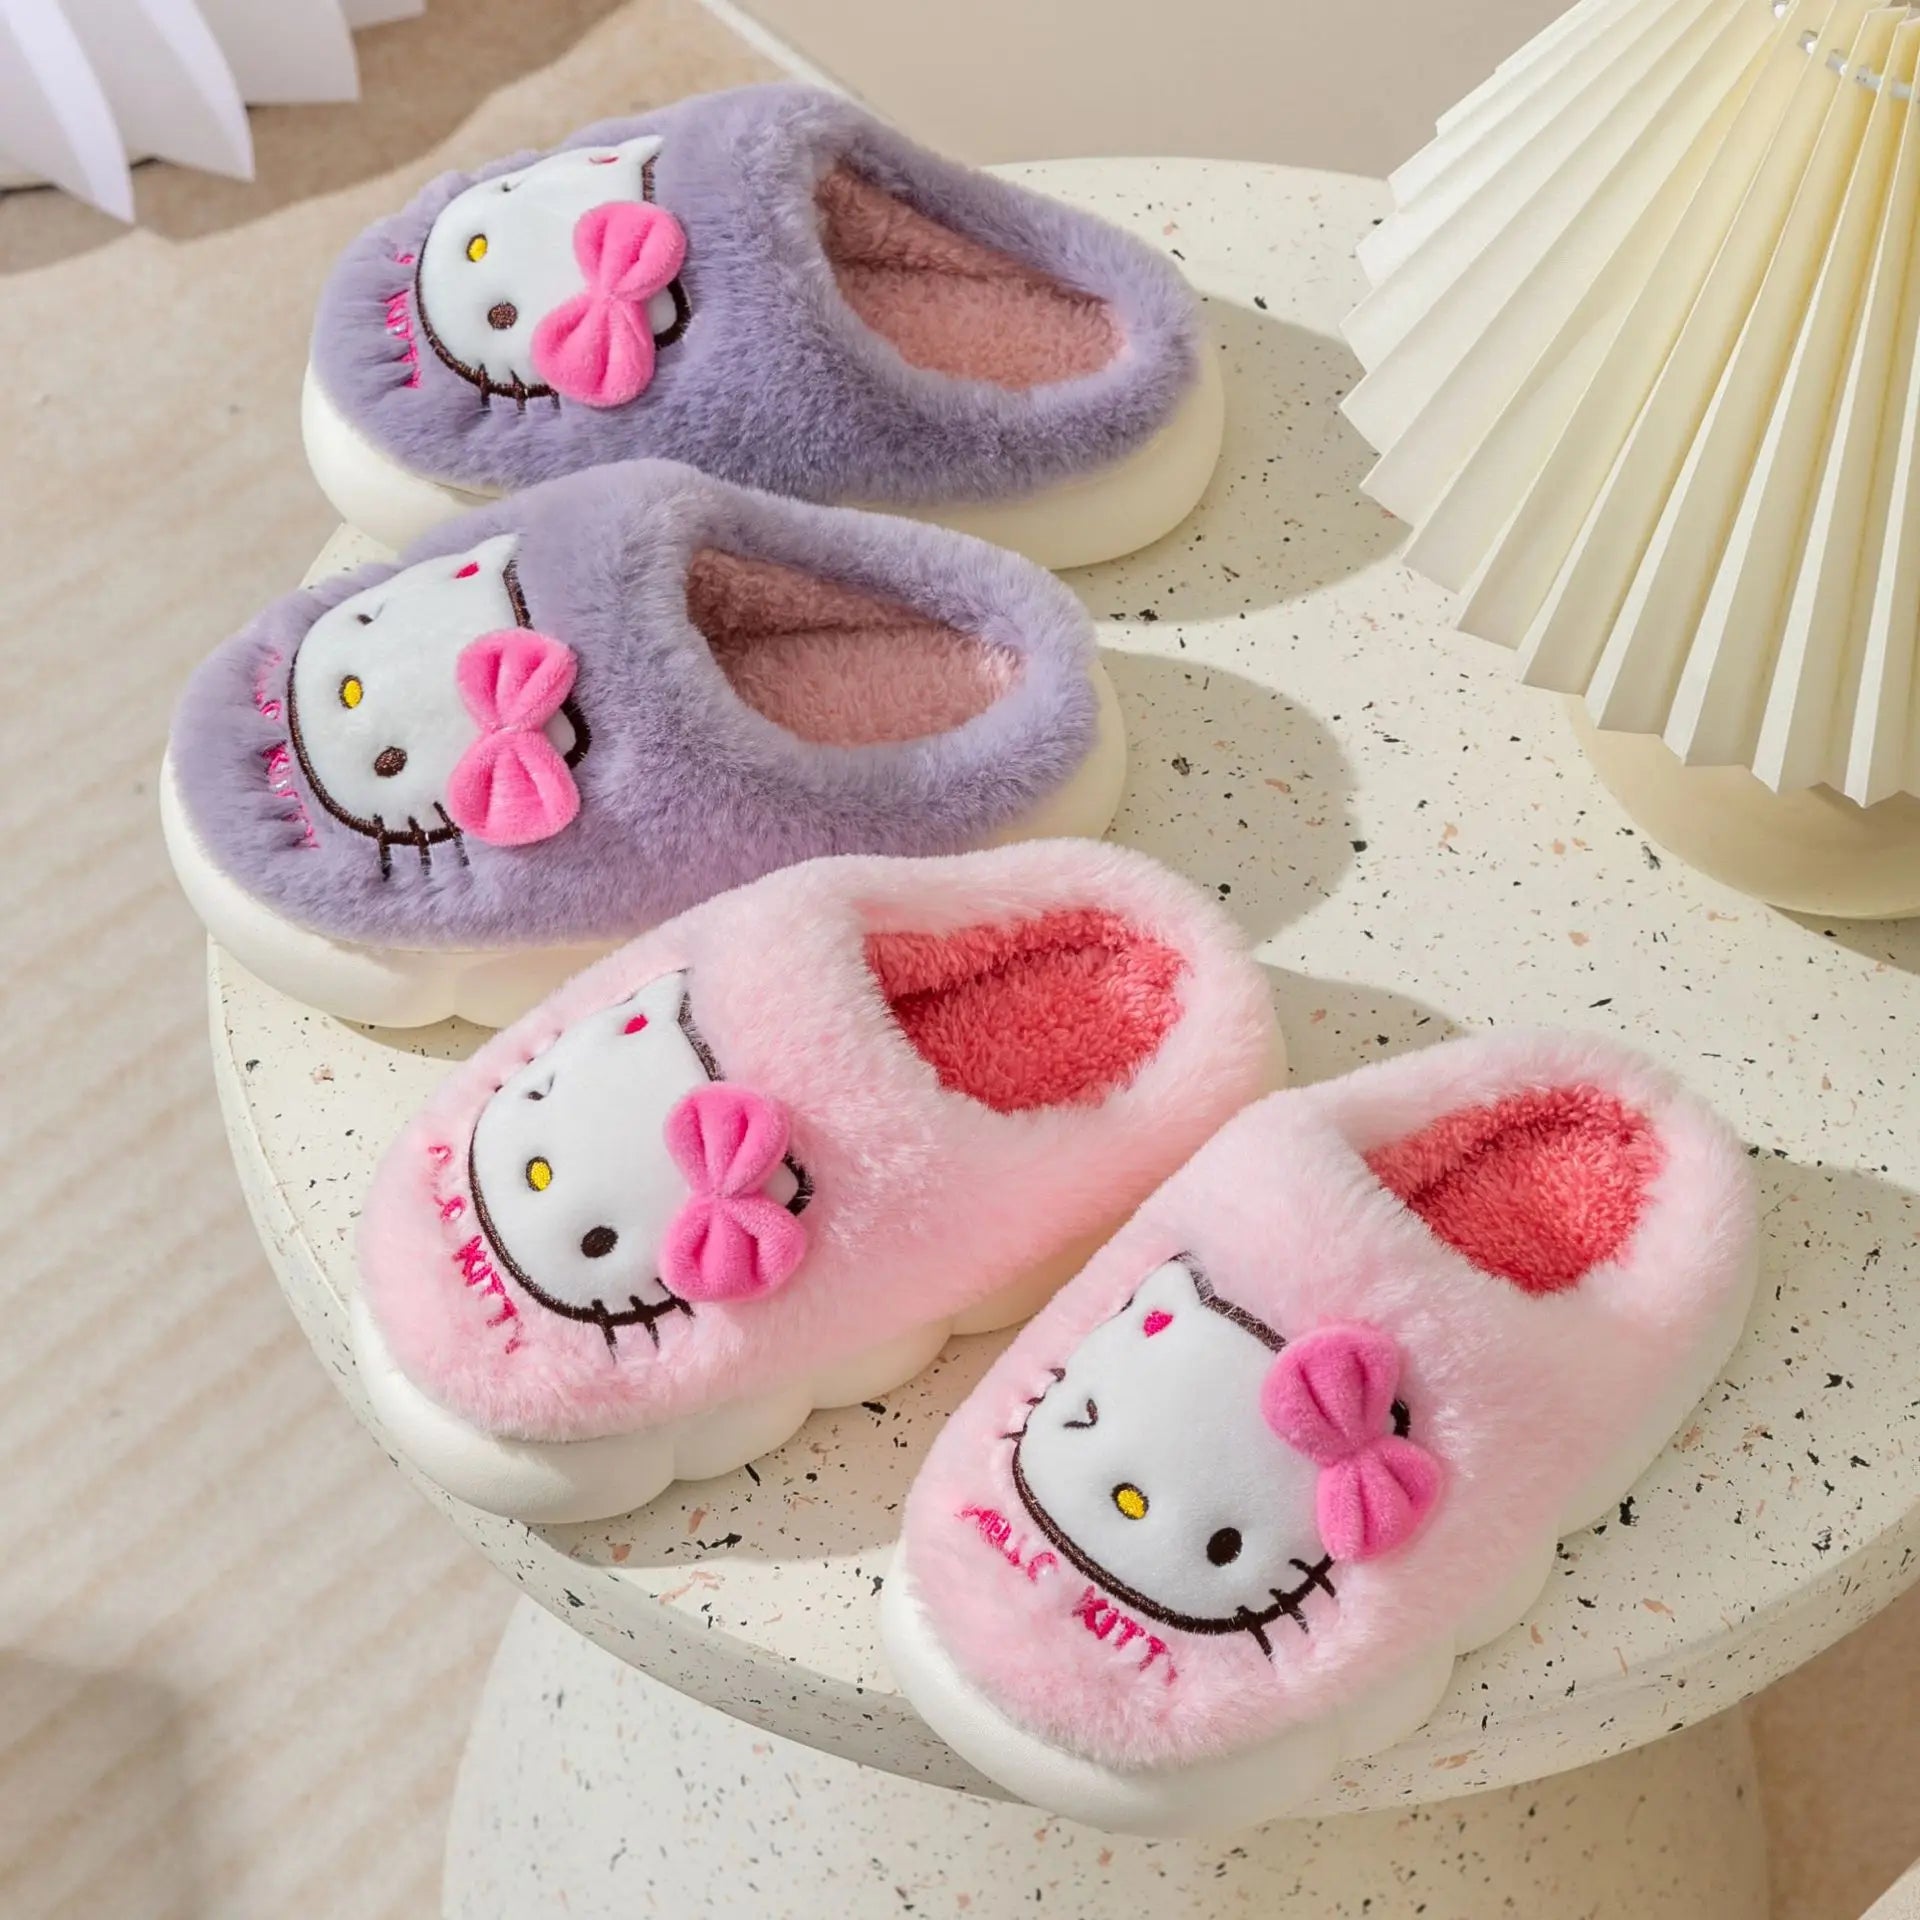 Kawaii Hello Kitty Cozy Slippers